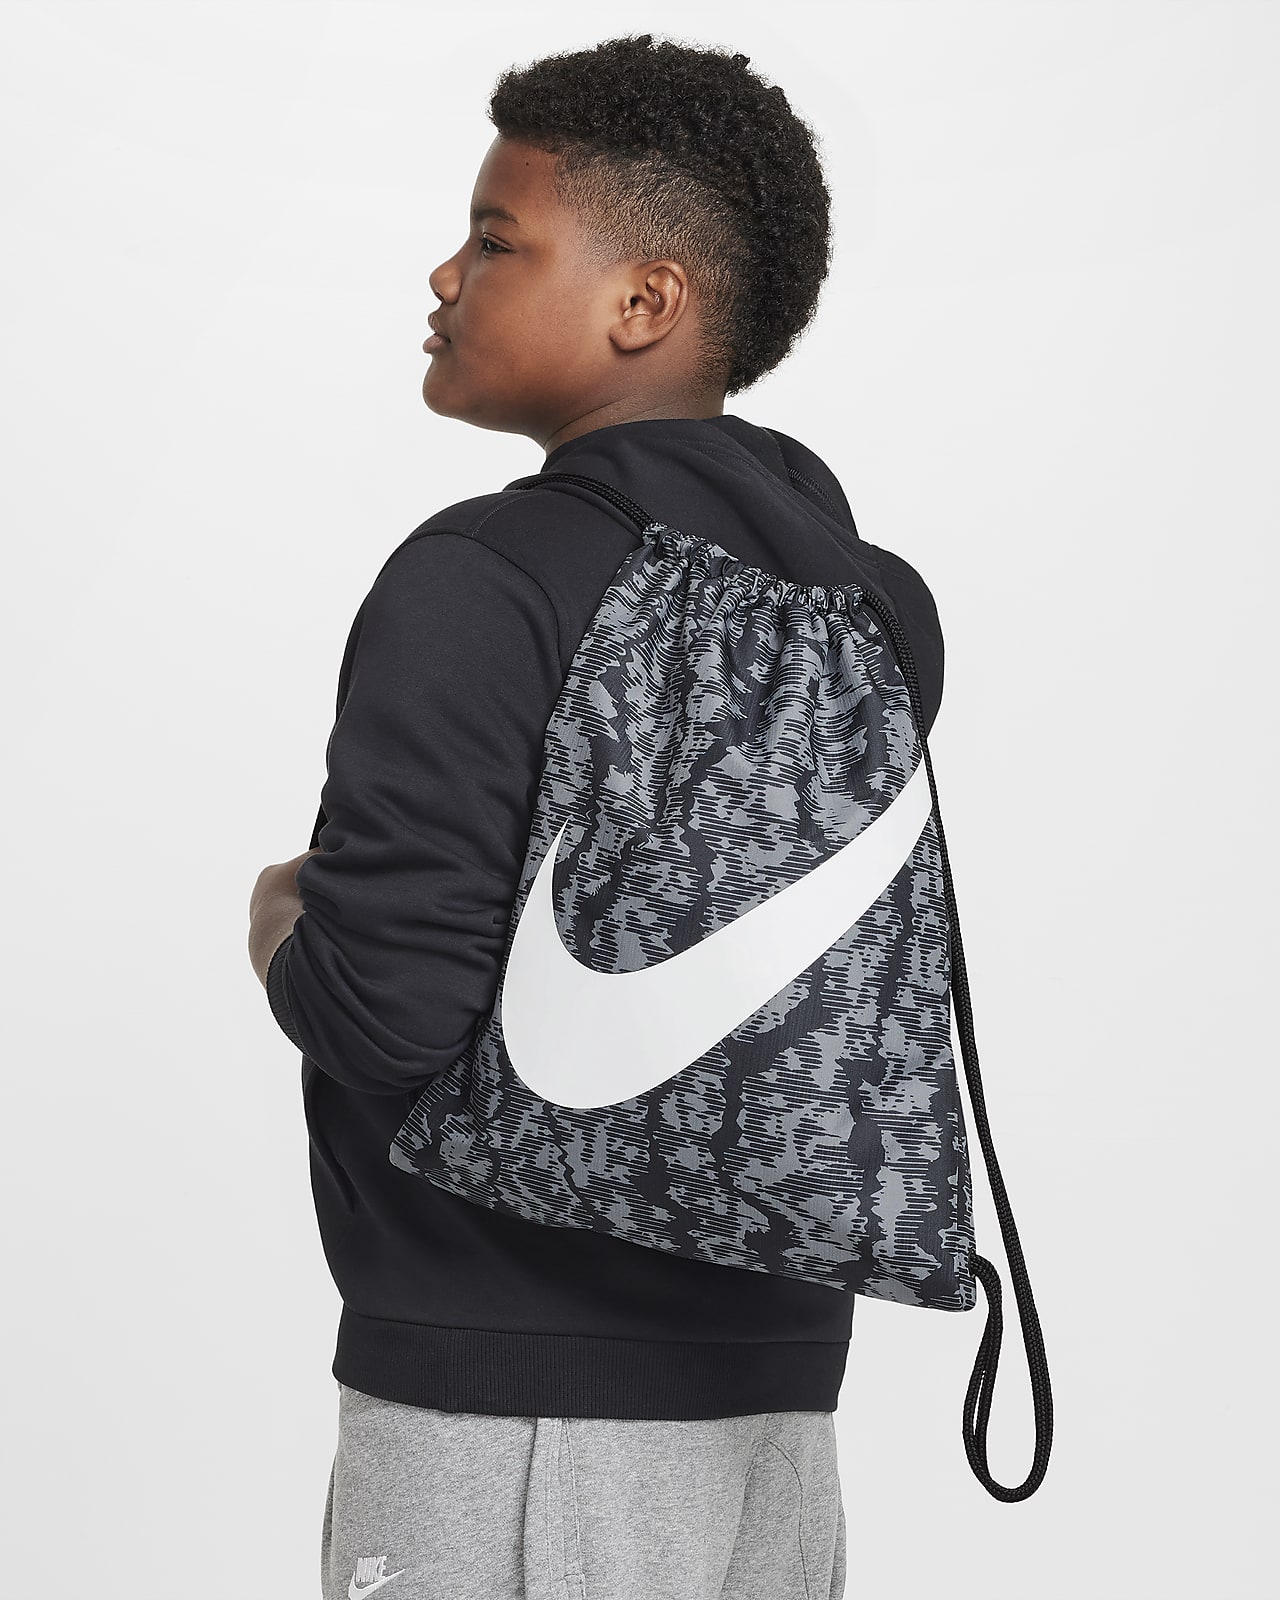 Nike Kids' Drawstring Bag (12L)